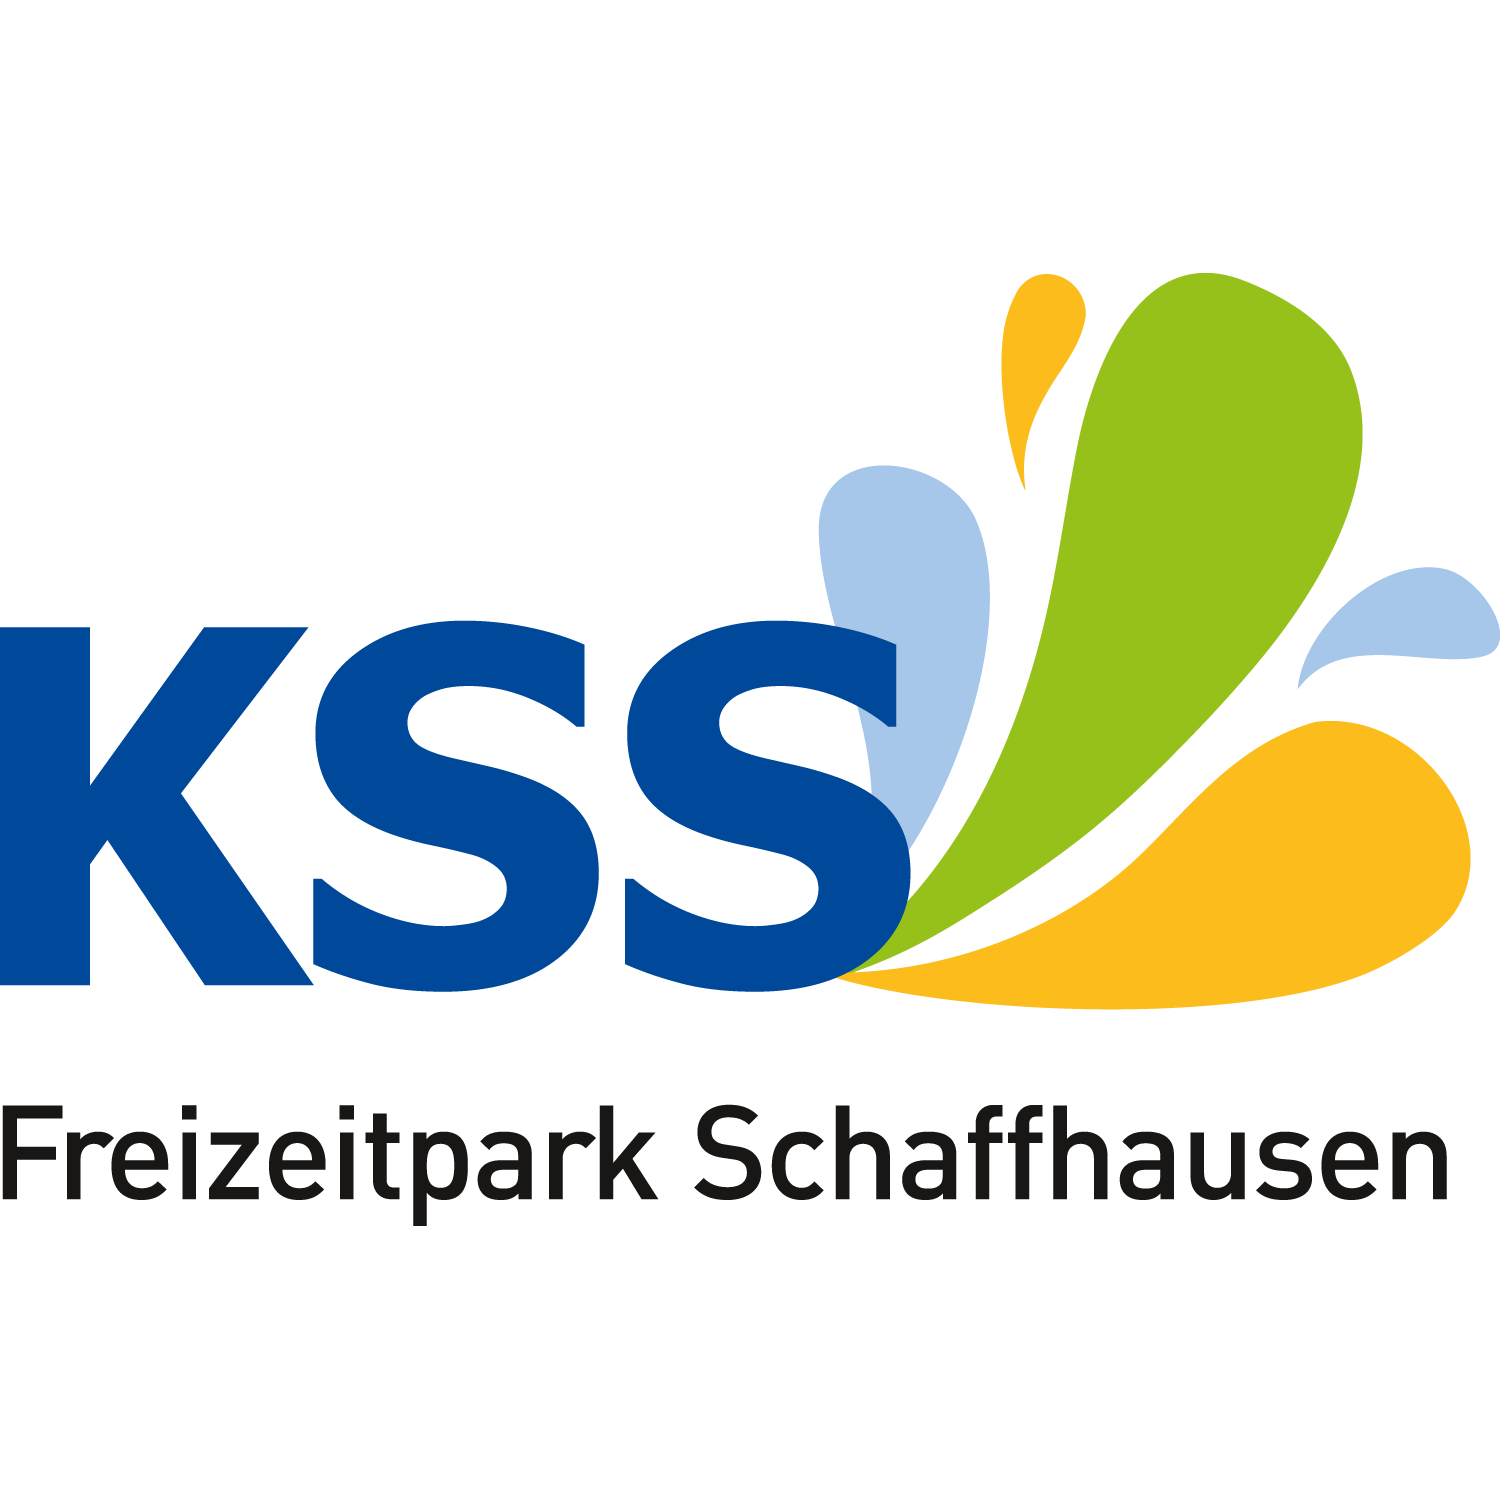 KSS Freizeitpark Schaffhausen Logo